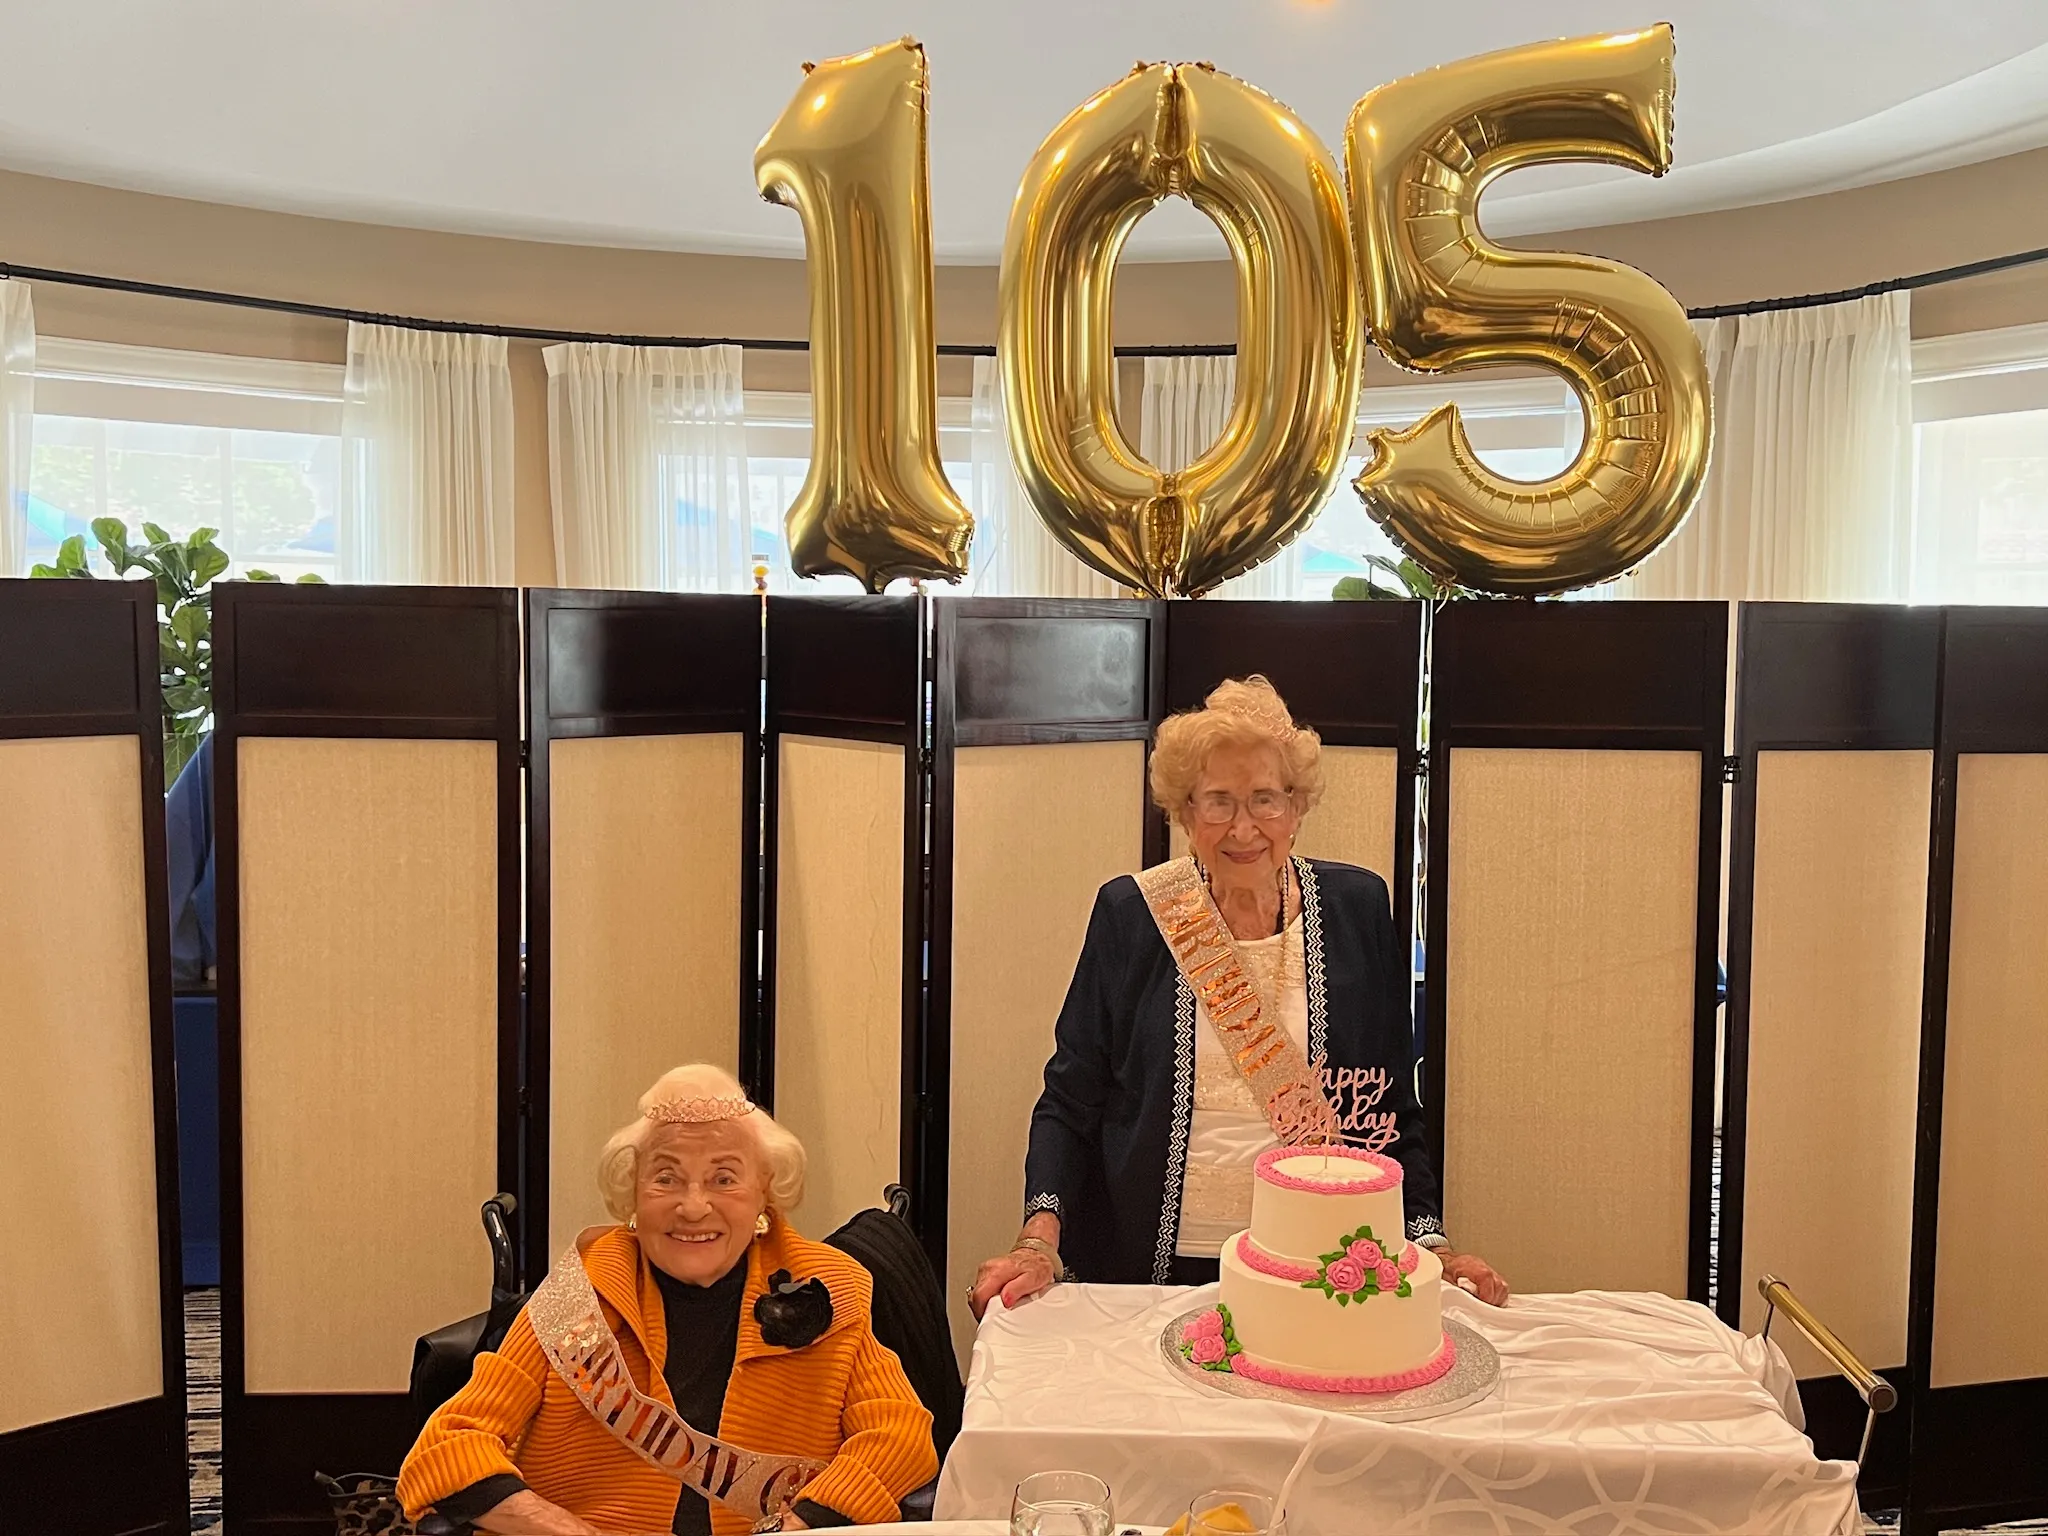 Sinai Residences Celebrates 105th Birthdays of Two Residents!